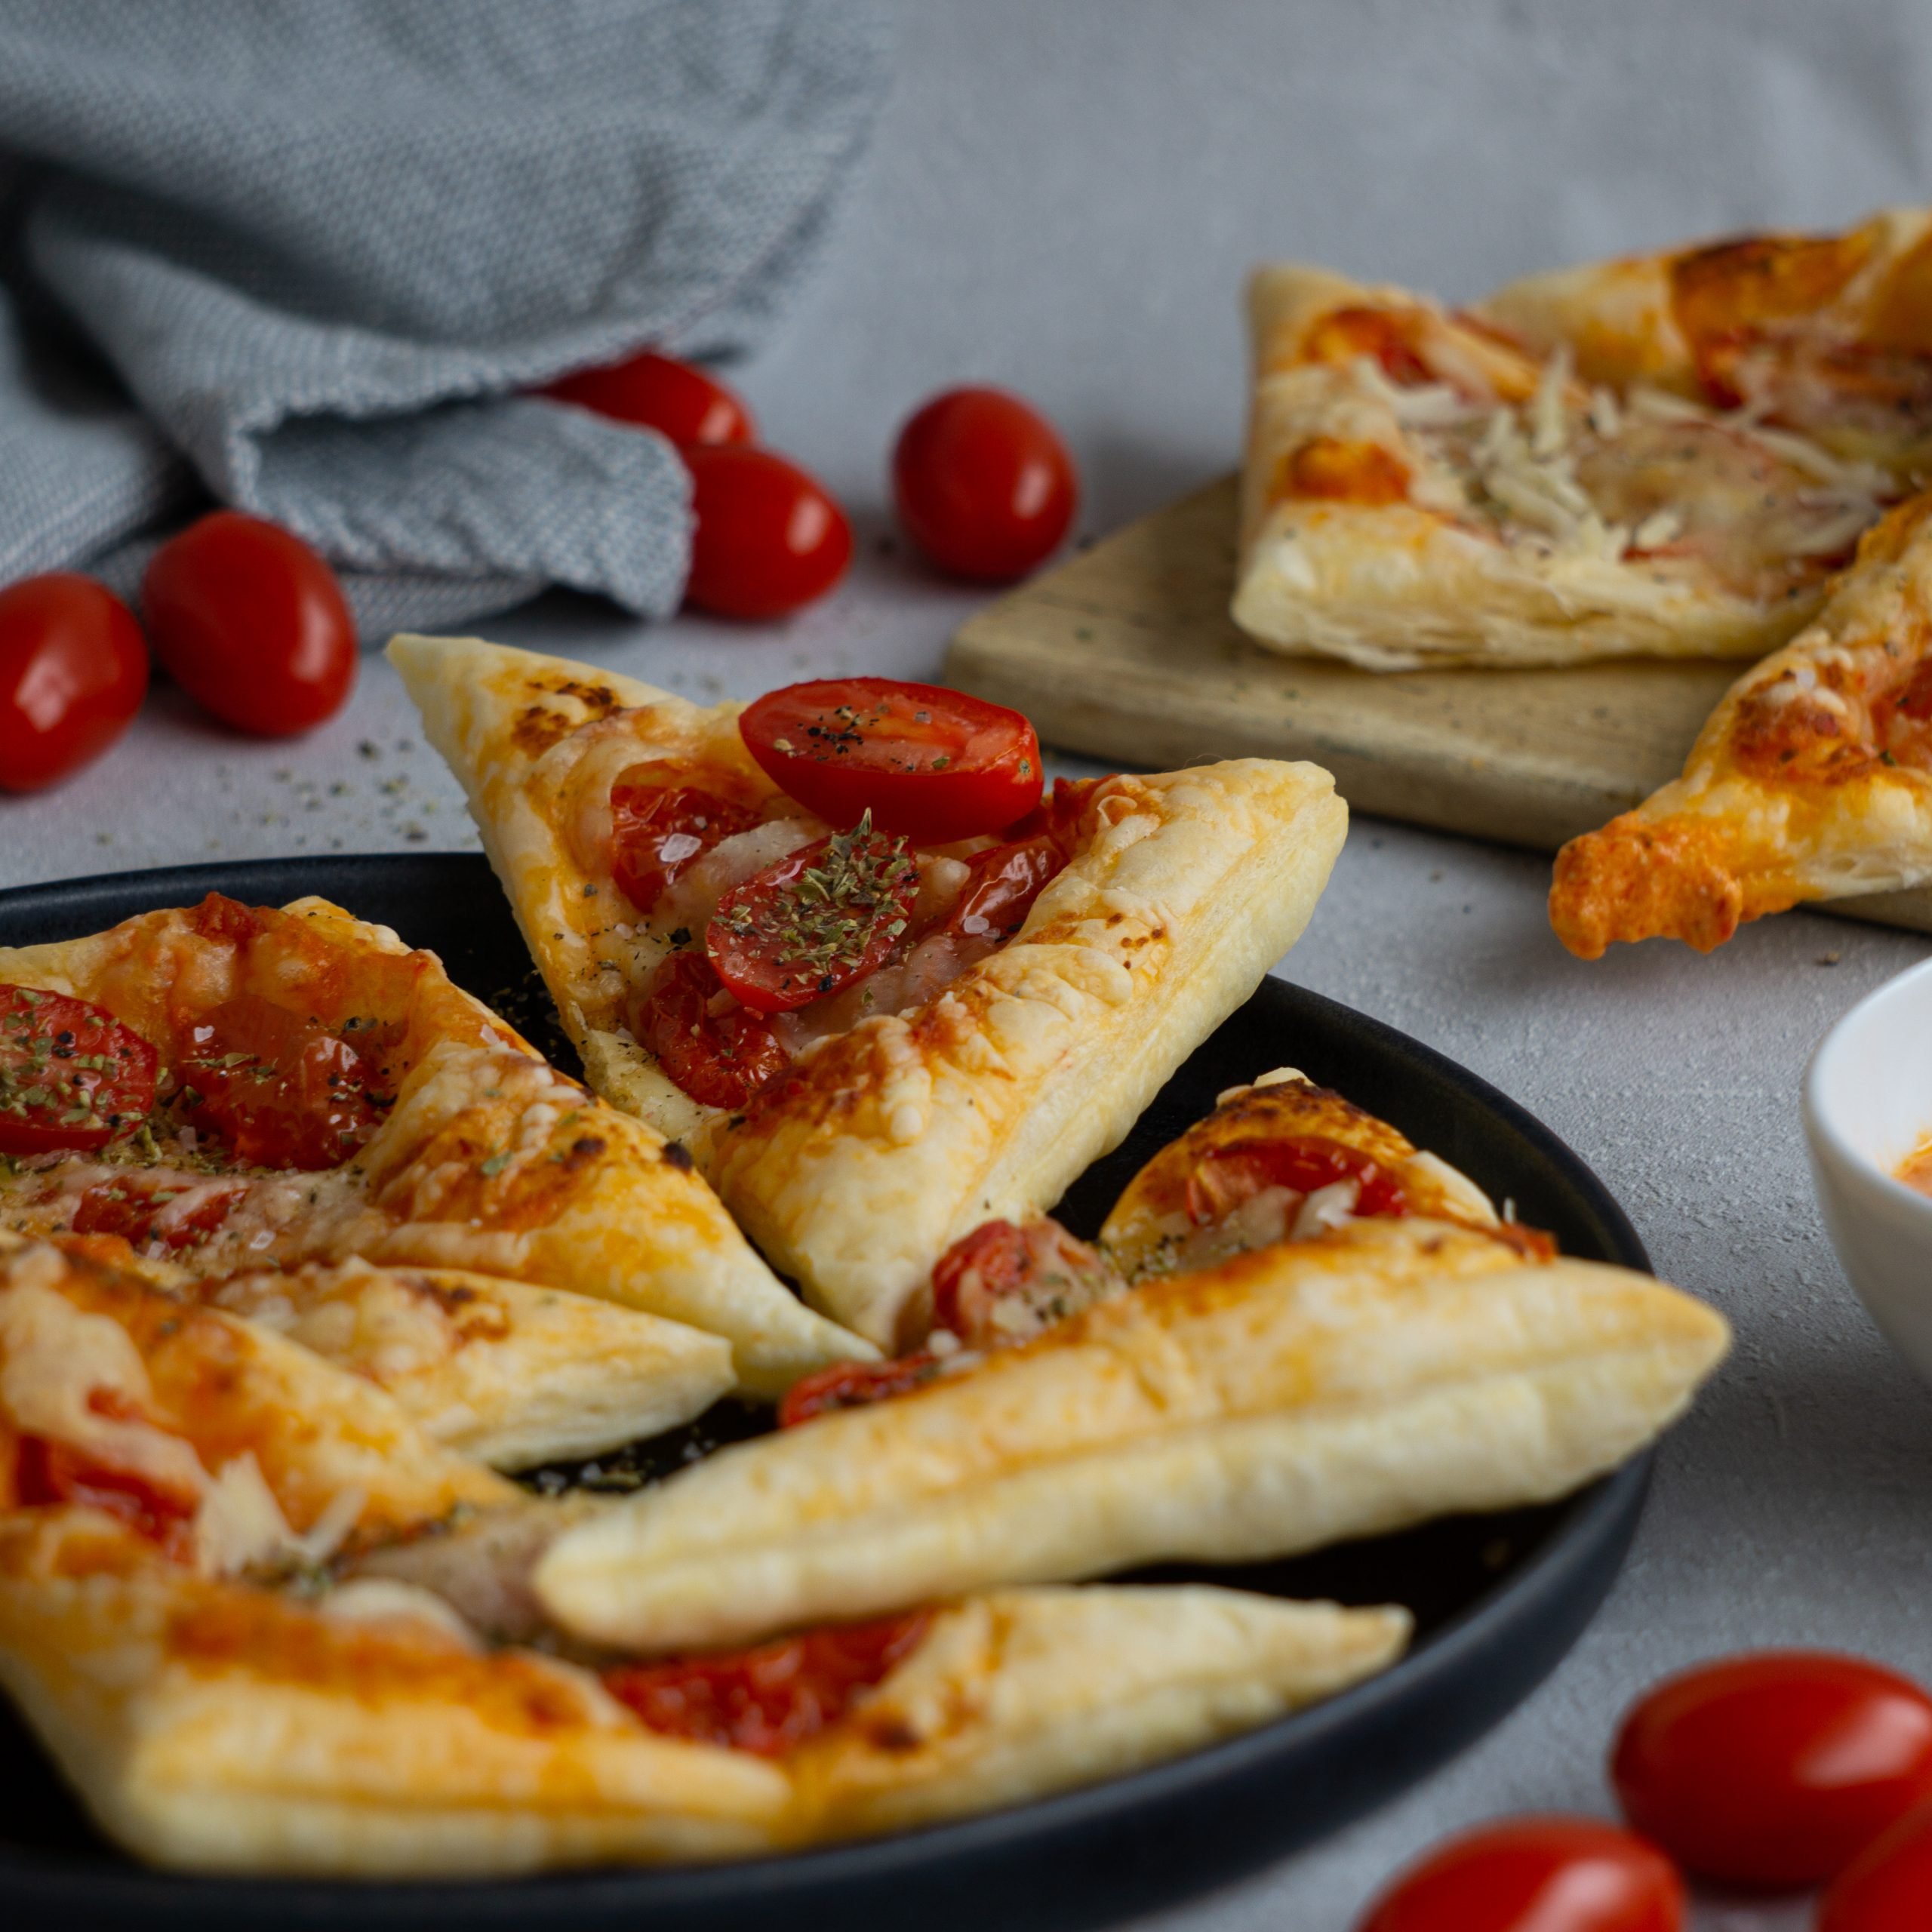 Dieses Bild zeigt eine Ansicht der Pizzaecken mit Tomaten und Mozzarella von vorne